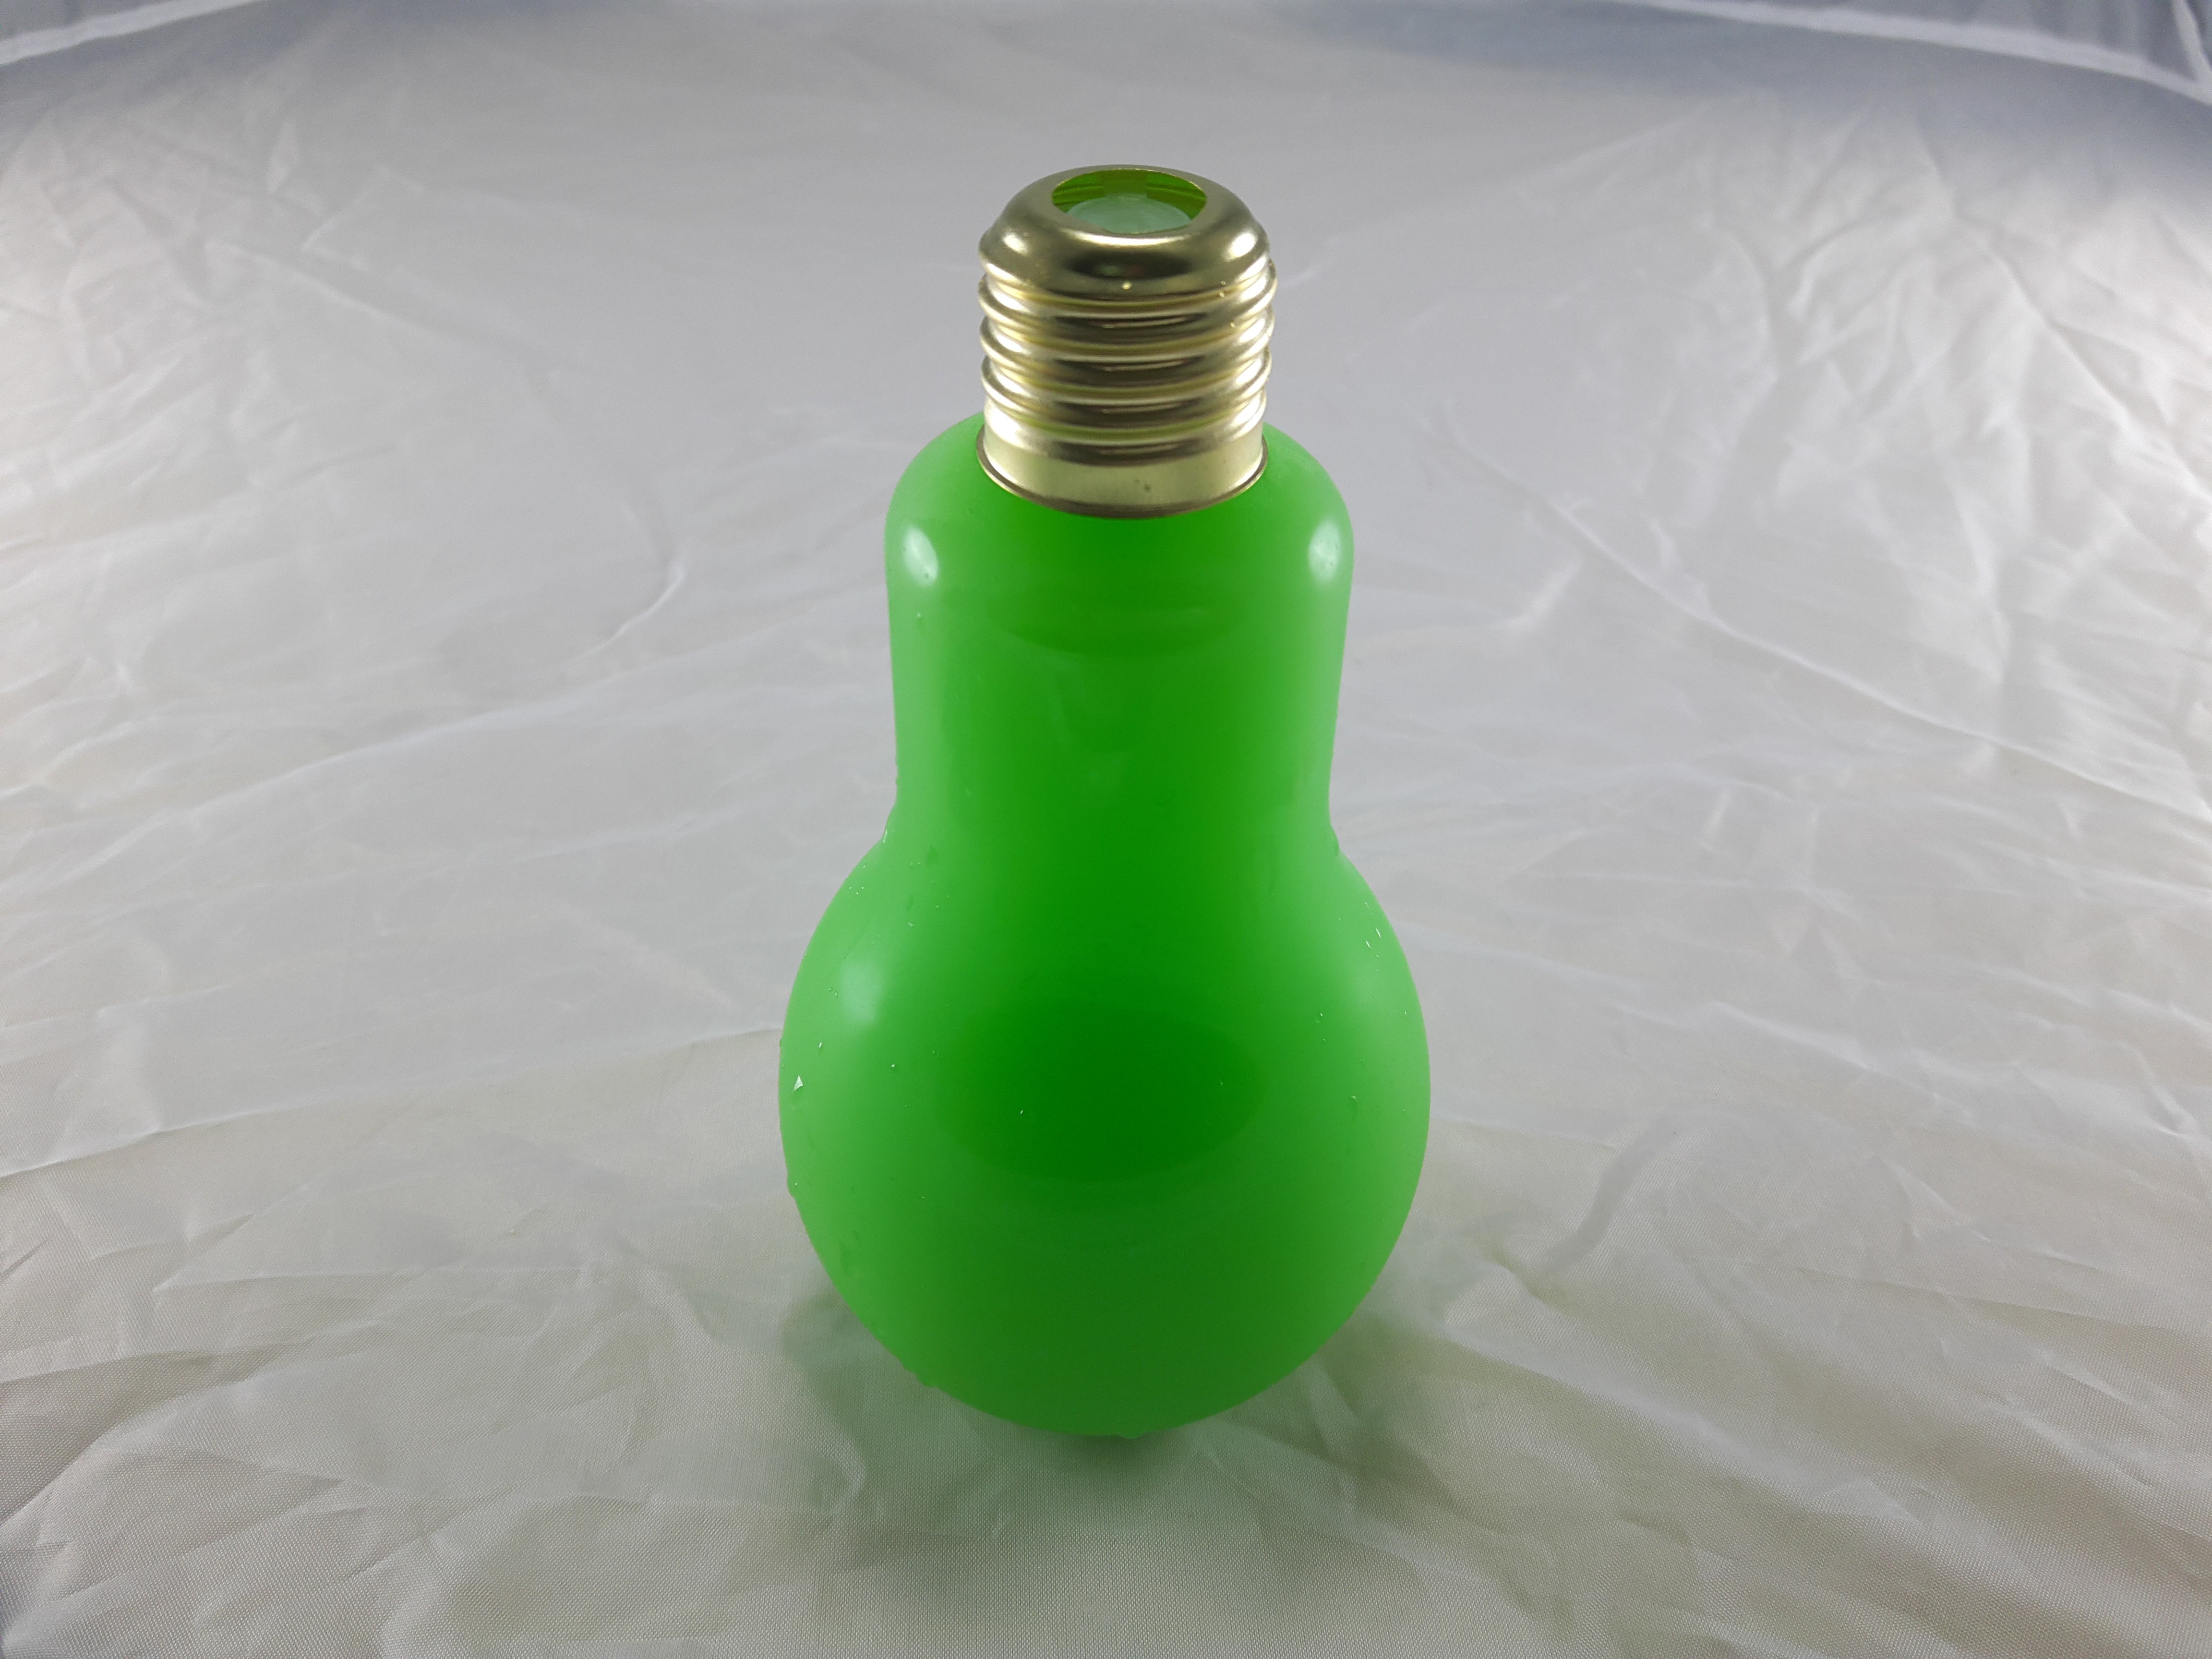 燈泡造型飲品-薄荷可爾必思(340cc)